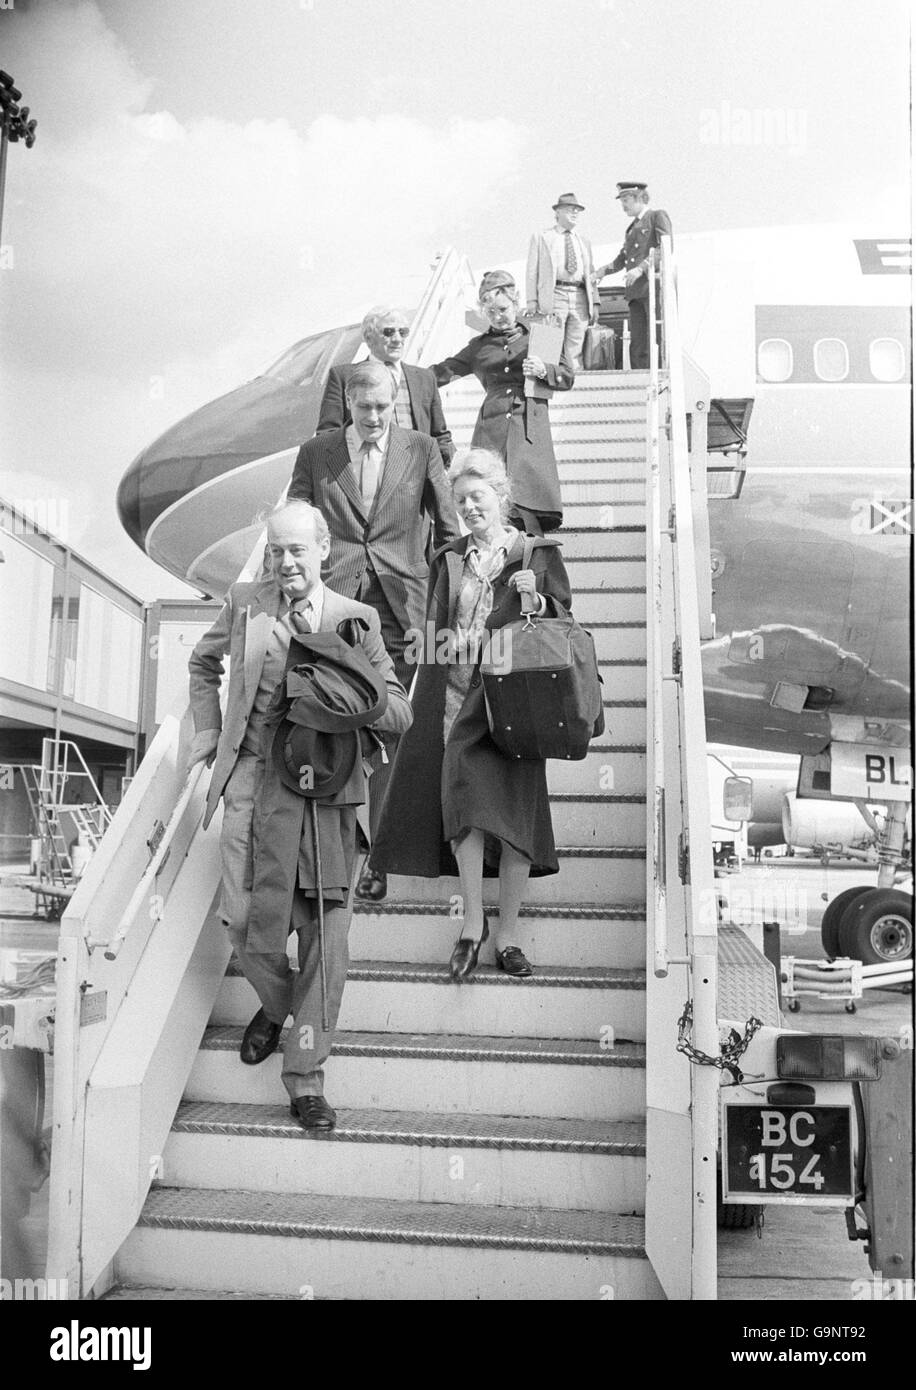 Anthony Williams, der britische Botschafter in Buenos Aires, und seine hasslose Frau Hedwig halten einen Spazierstock bei der heutigen Ankunft am Flughafen Gatwick, nach der Unterbrechung der diplomatischen Beziehungen zu den Argentiniern. Stockfoto